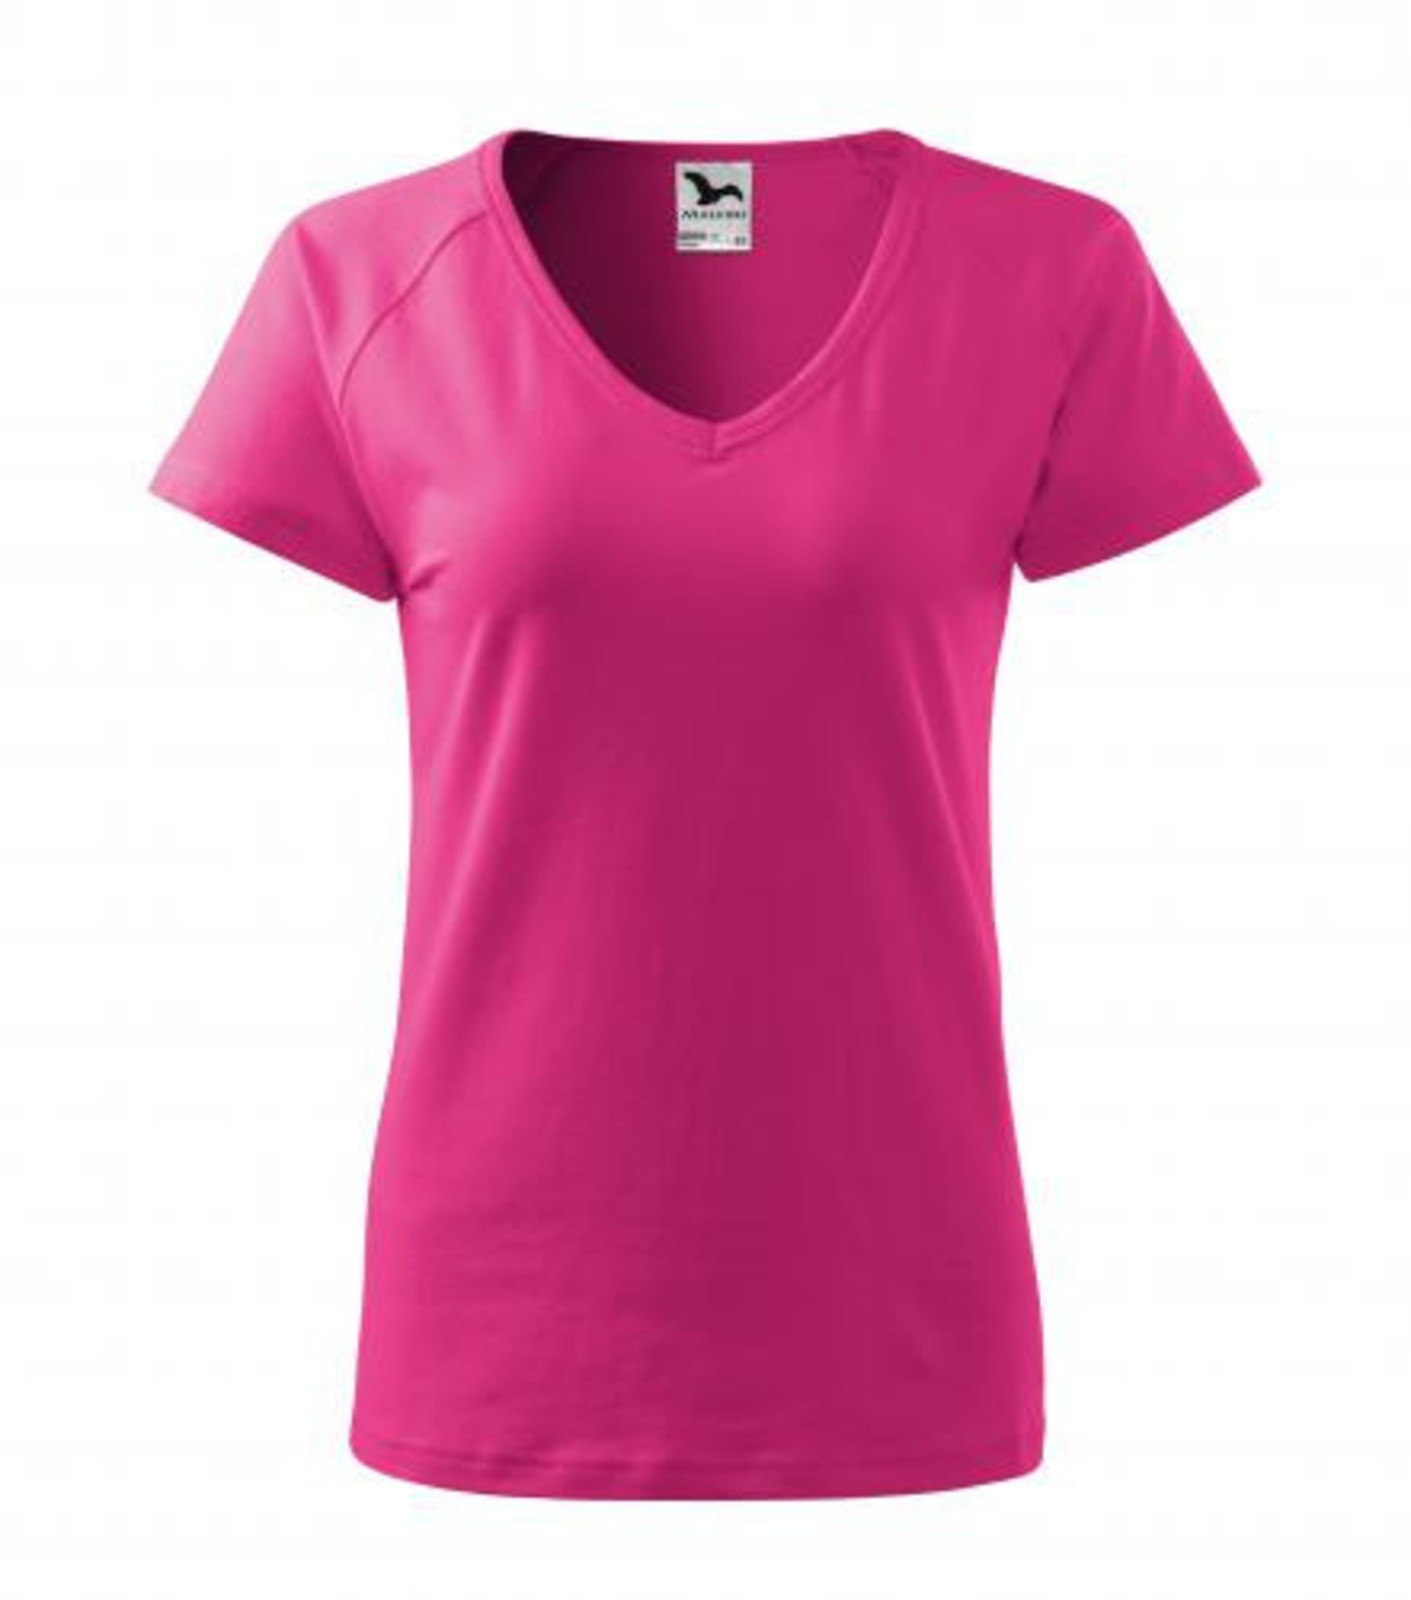 Dámske tričko s V výstrihom Adler Dream 128 - veľkosť: XL, farba: purpurová